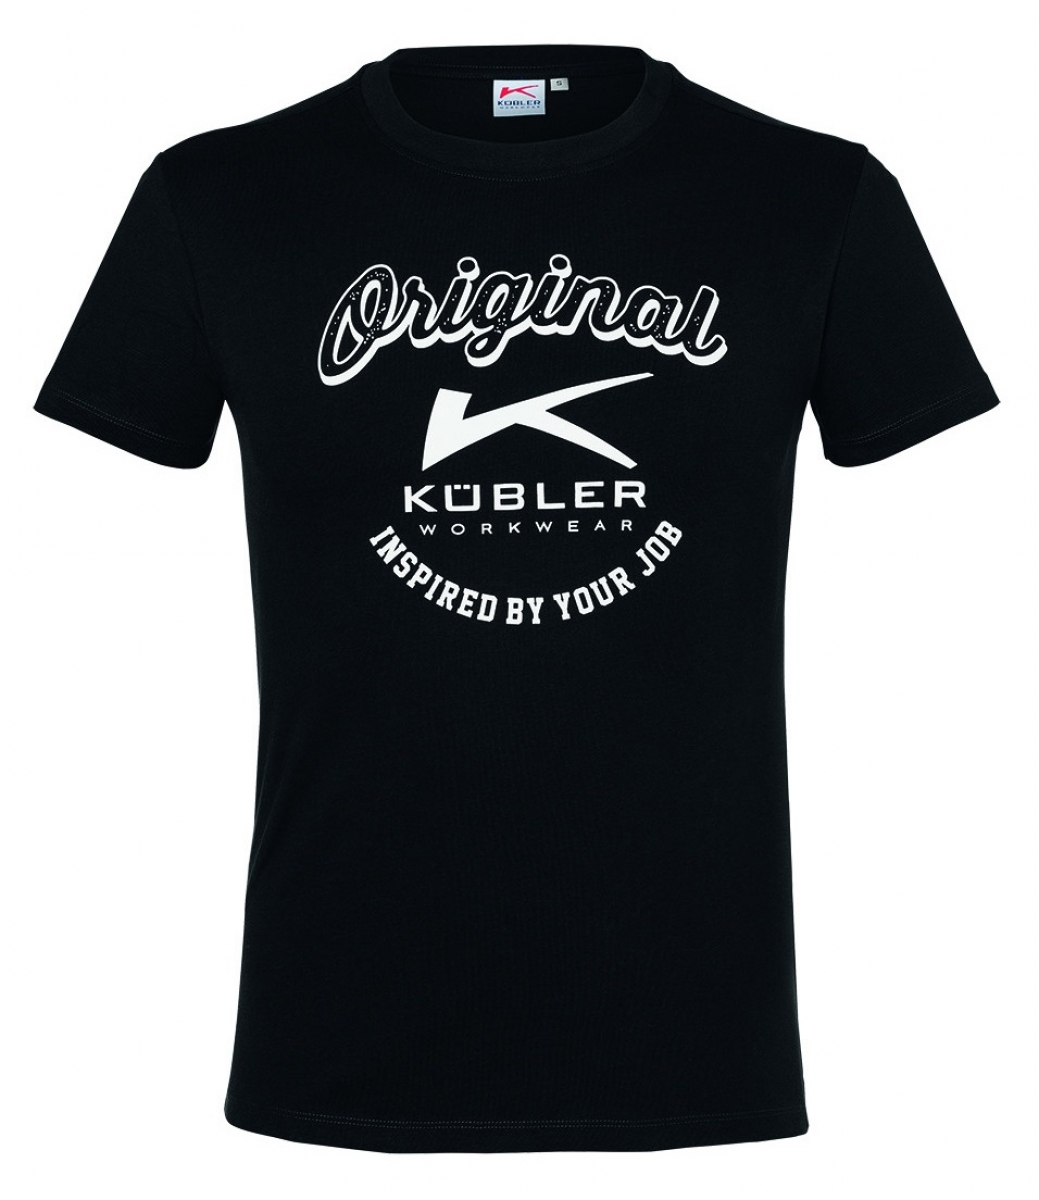 KBLER-Worker-Shirts, Workwear-T-Shirts Print, 200 g/m, schwarz